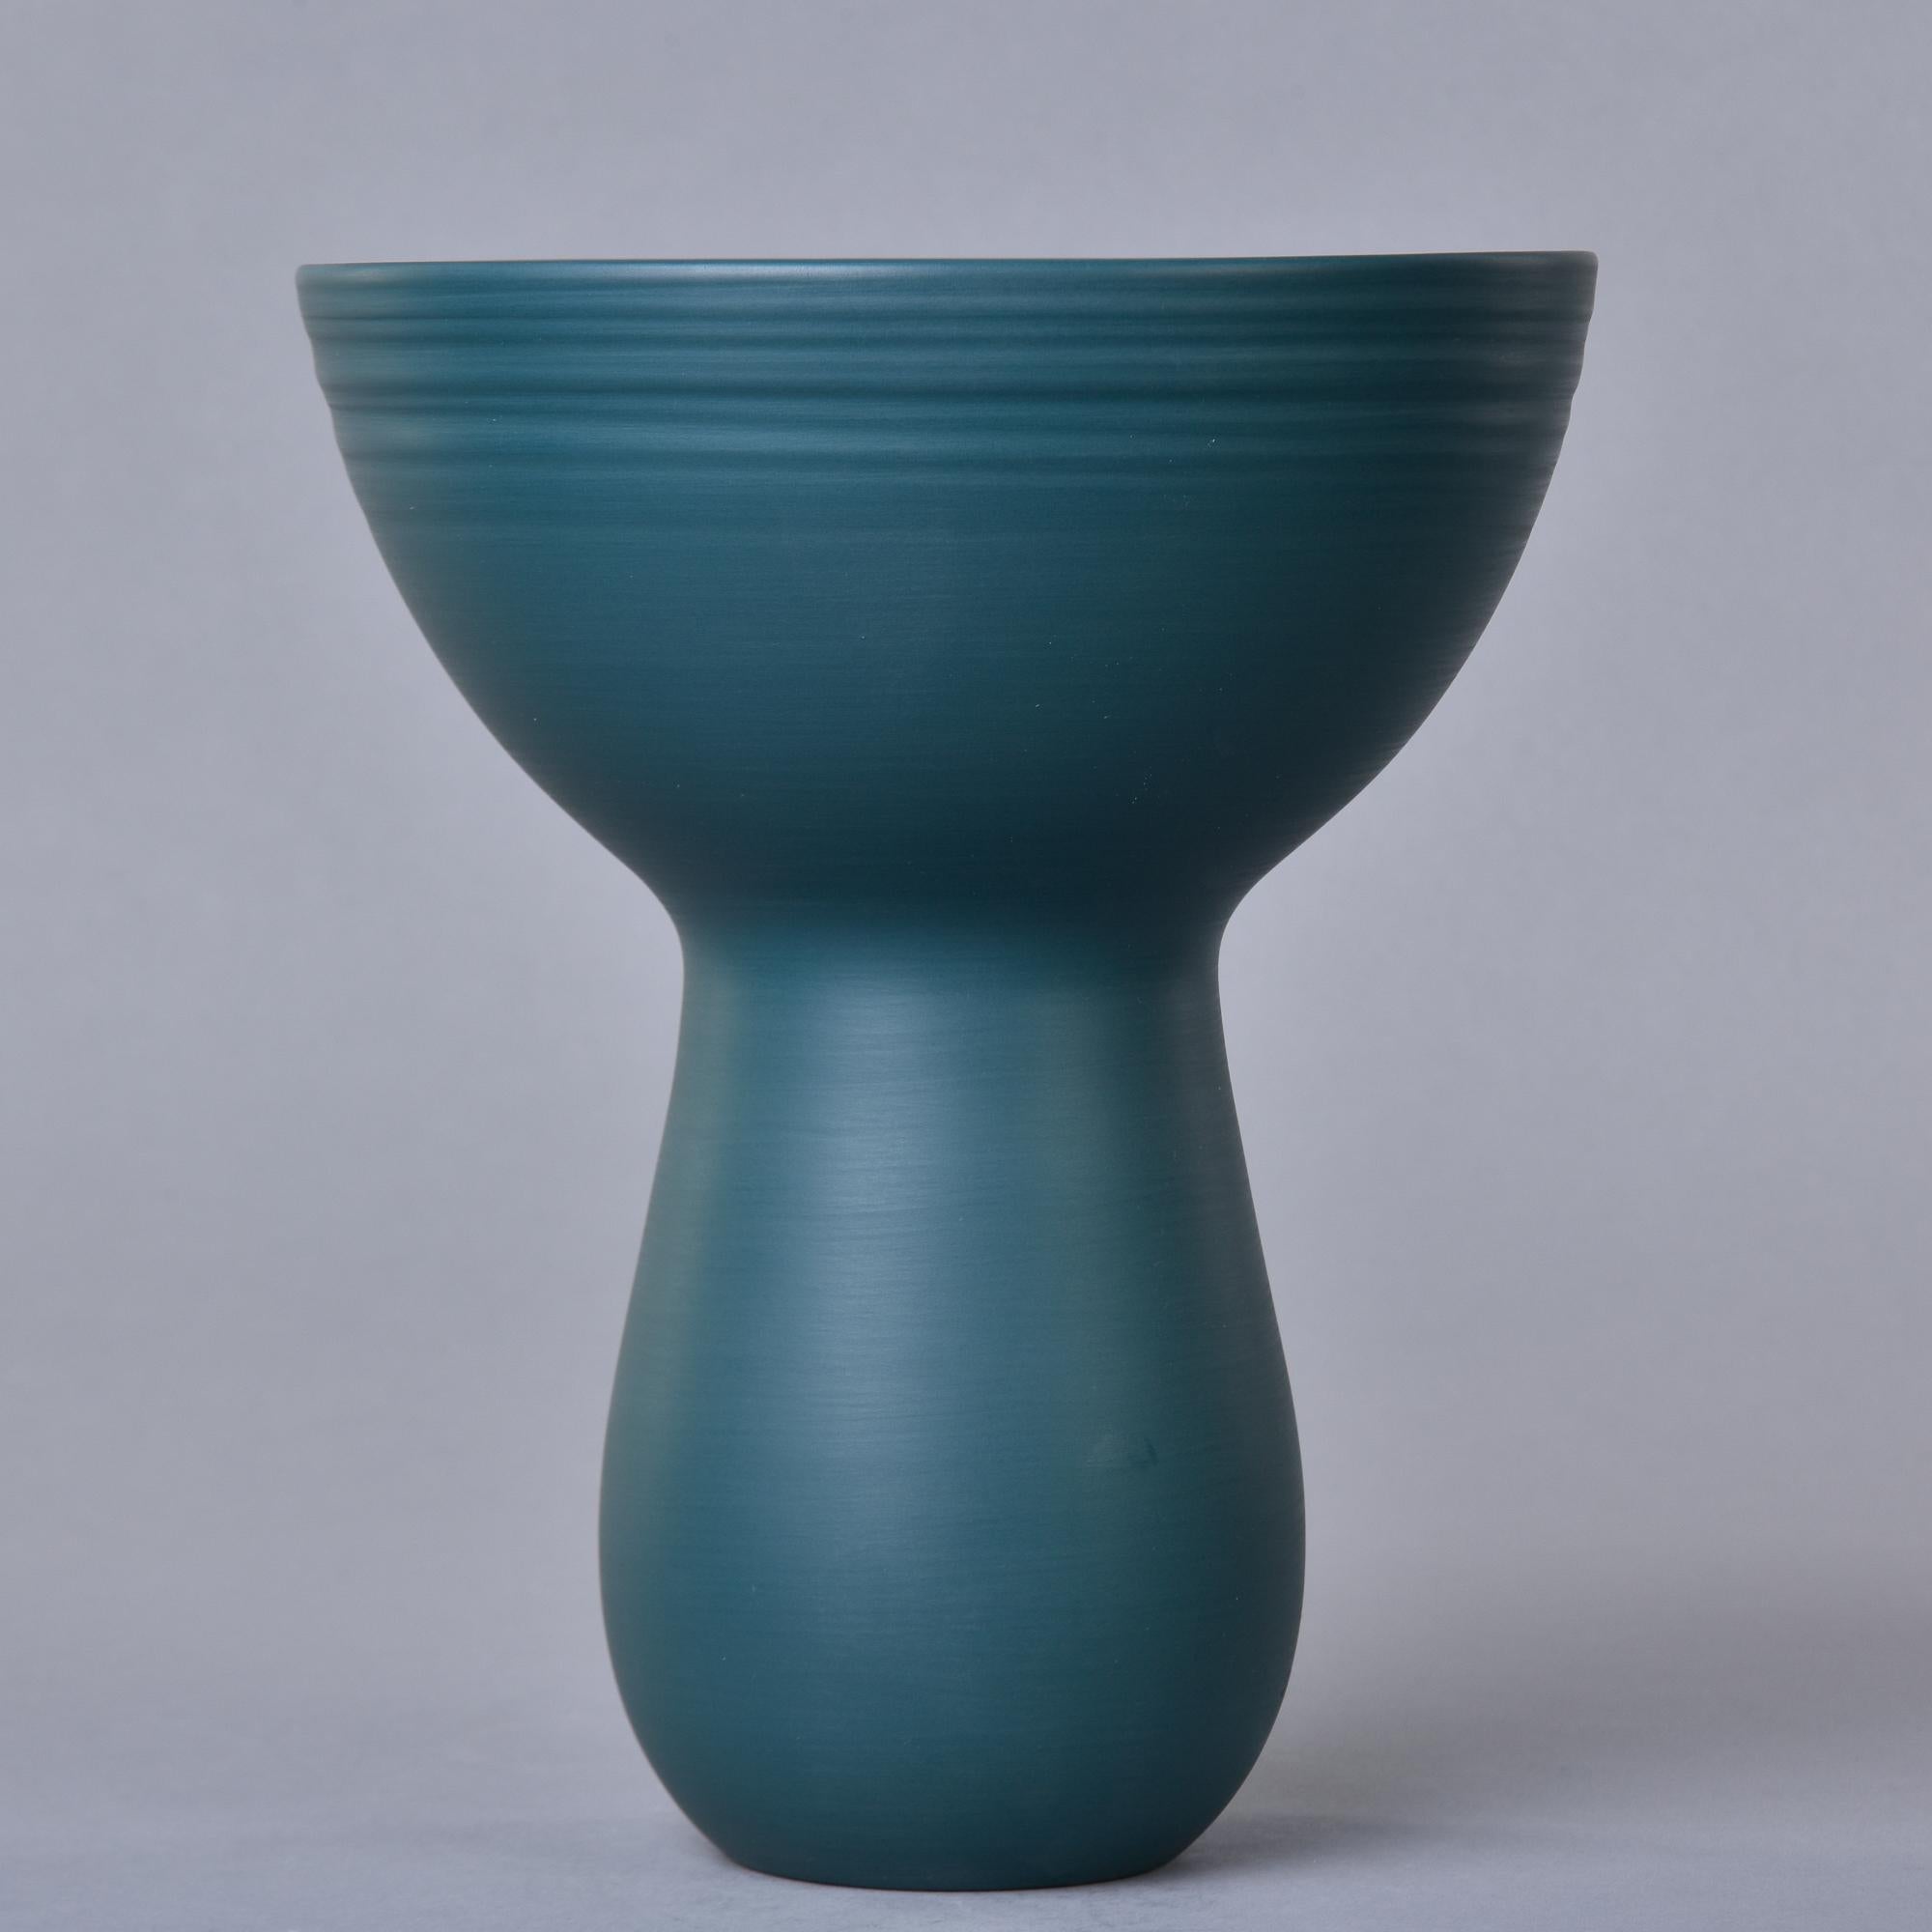 Nouveau et fabriqué en Italie par Rina Menardi, ce vase à bouquet mesure 10